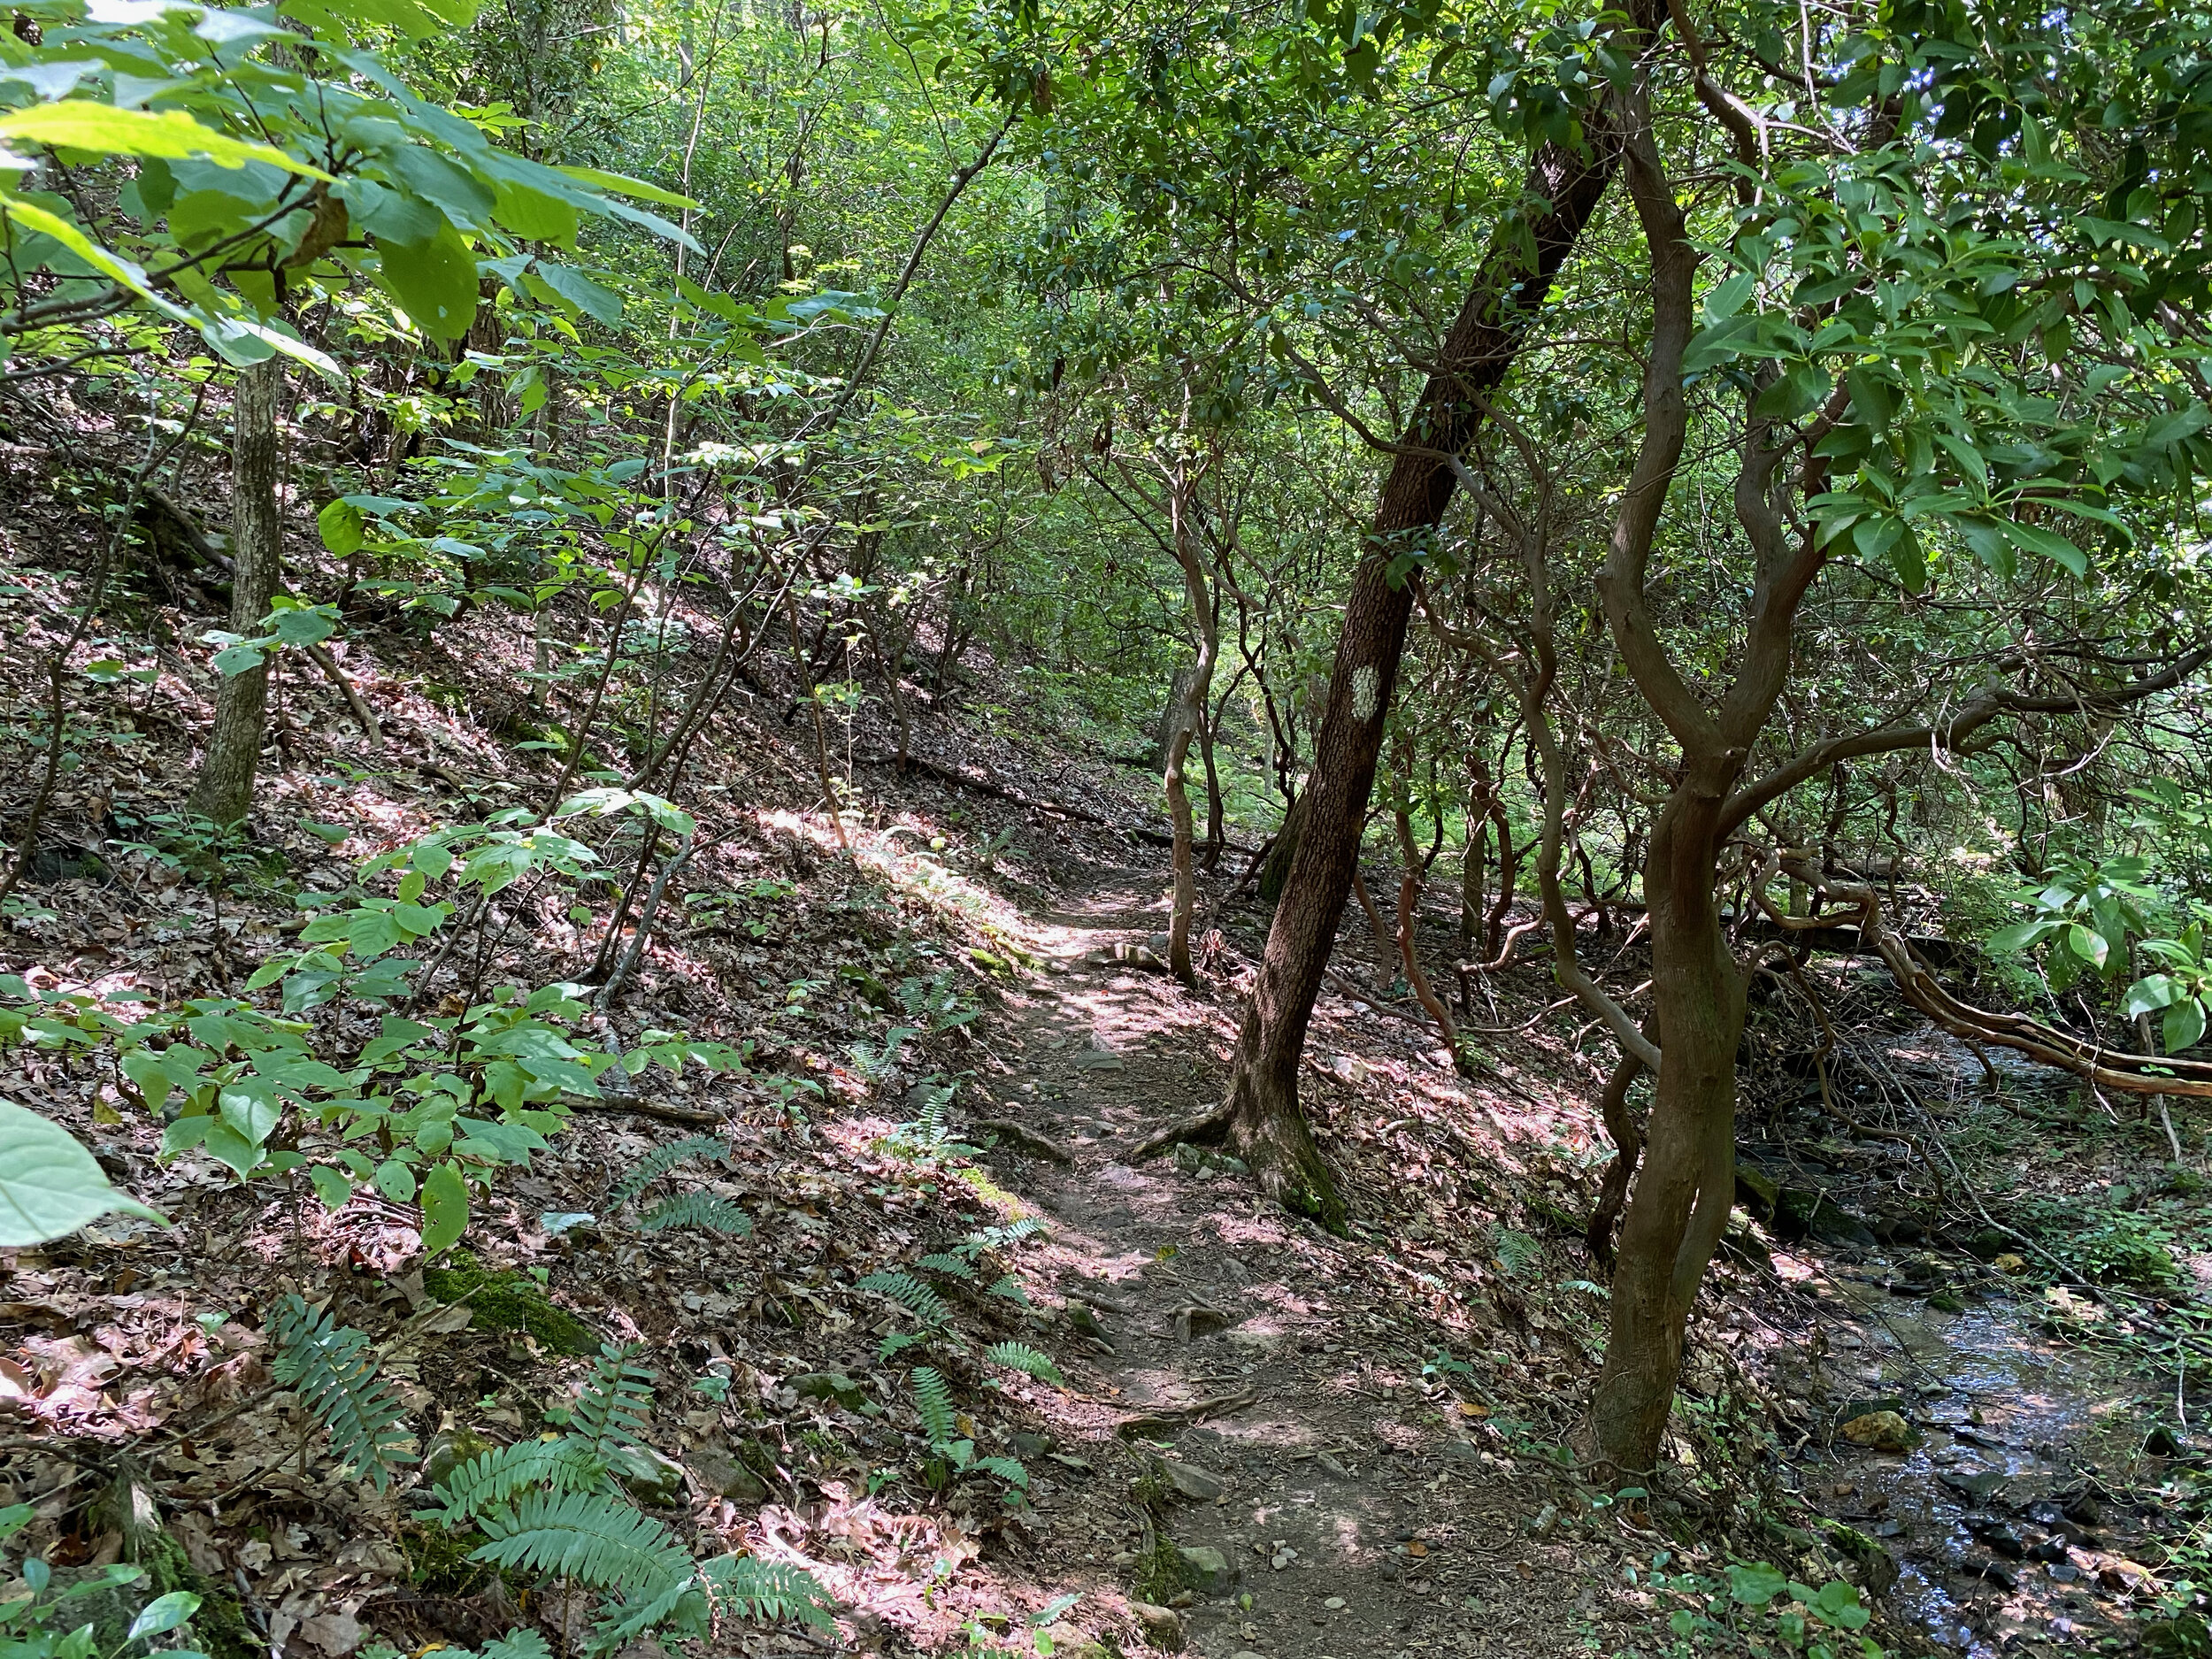 Upper Falls Trail